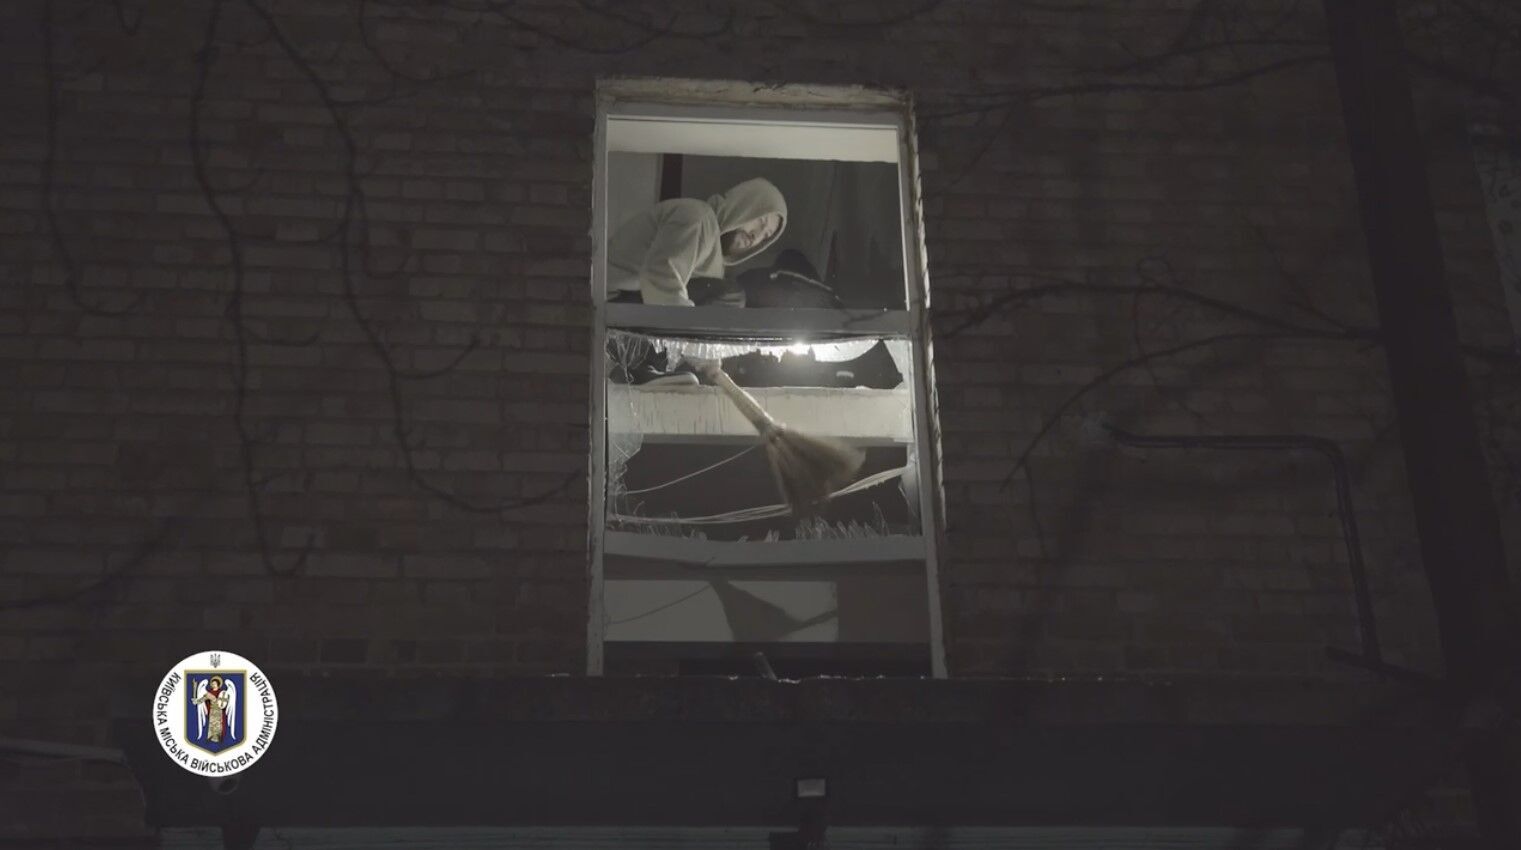 Кадры из Соломенского района Киева: между домами – воронка диаметром 10 метров (видео)